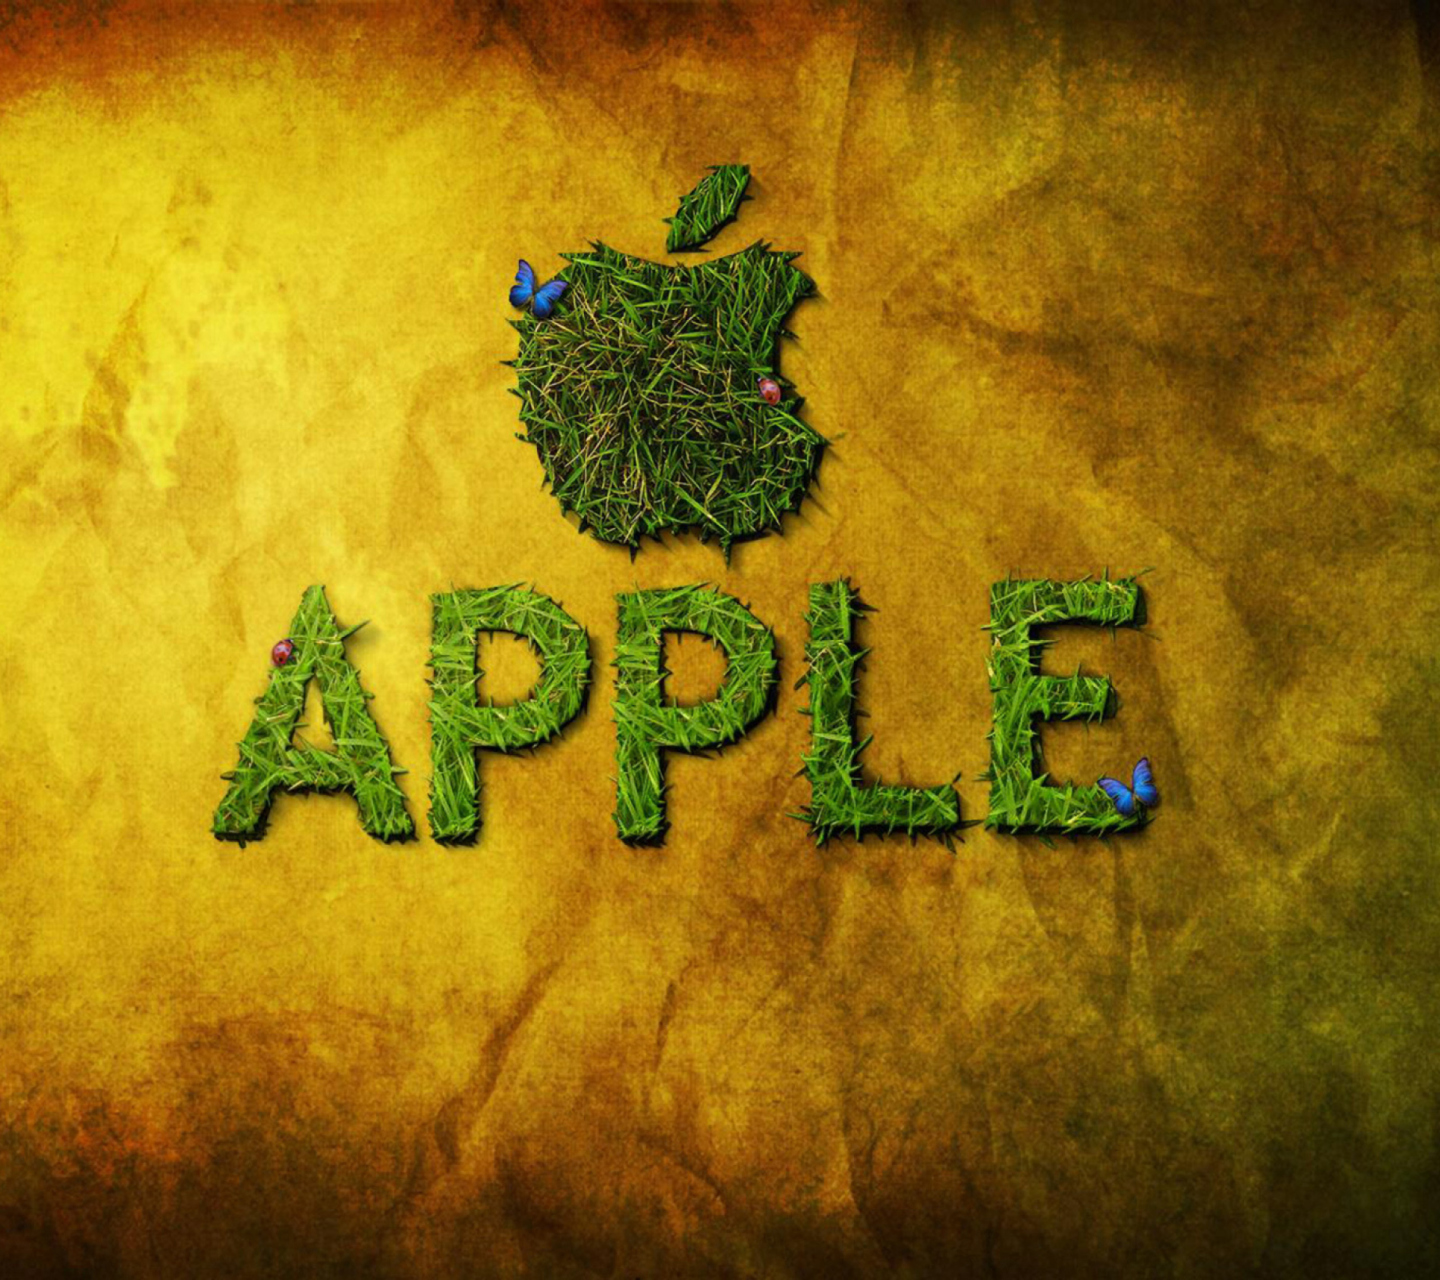 Das Green Apple Wallpaper 1440x1280